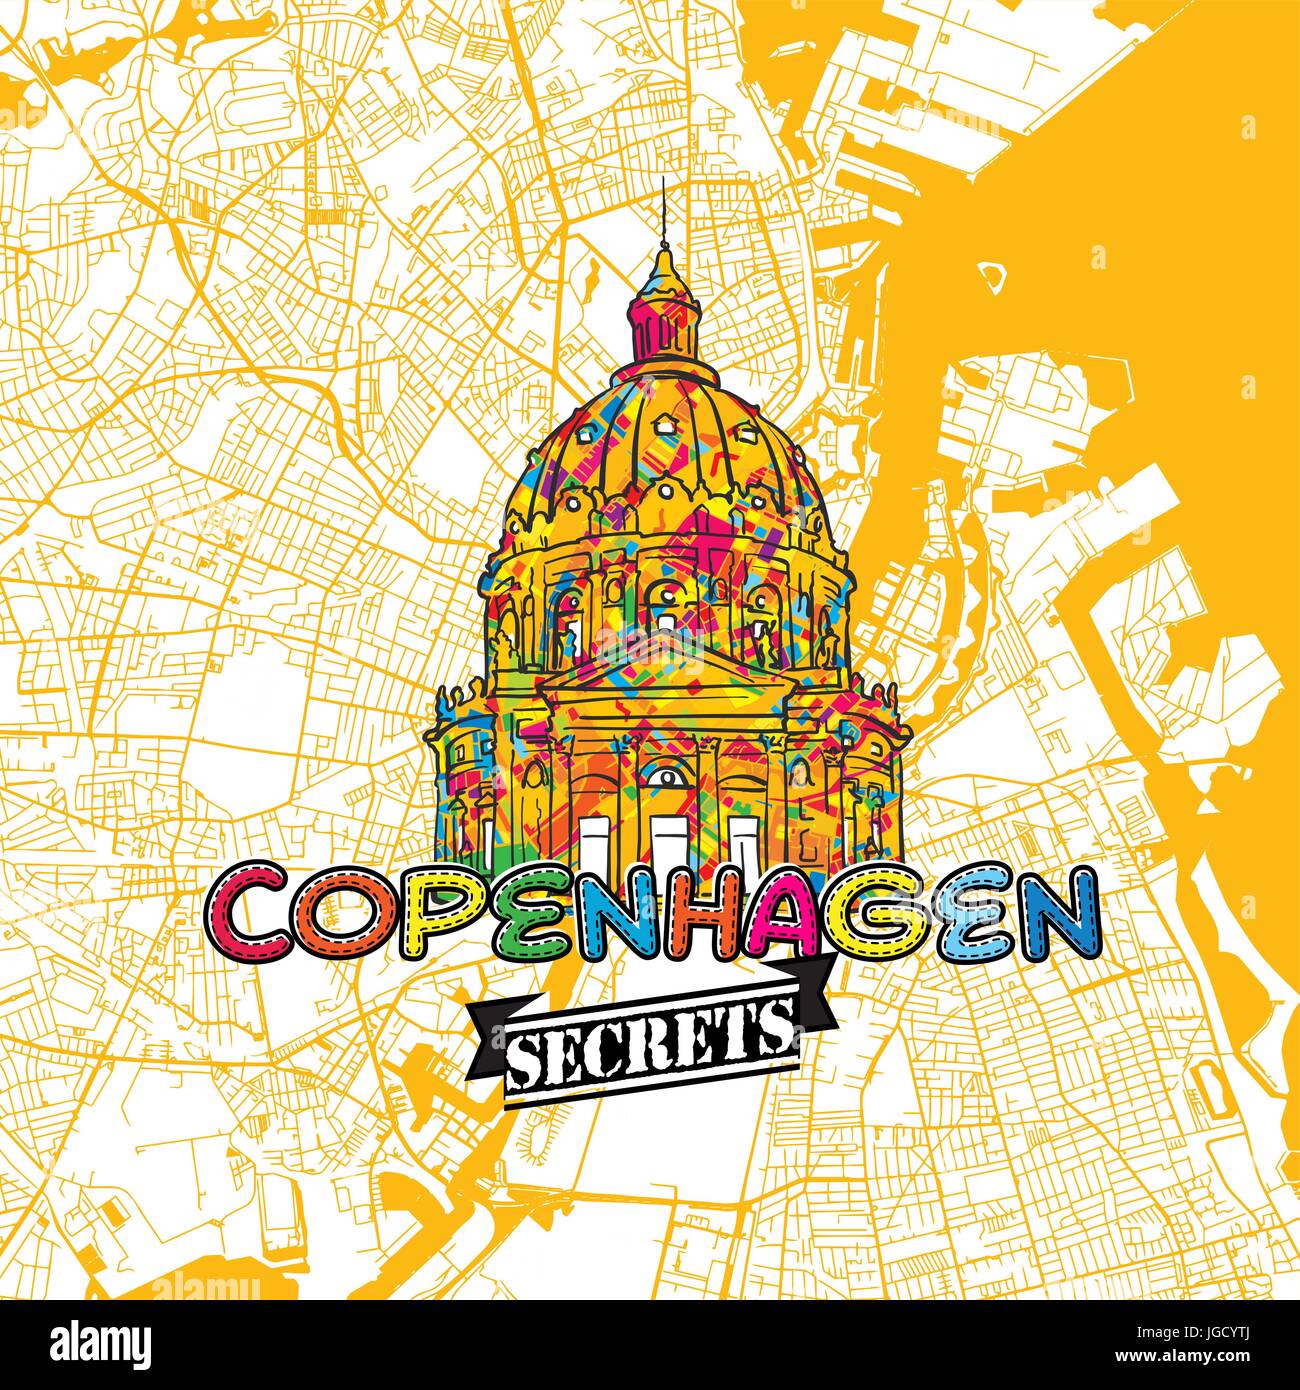 Kopenhagen Reise Geheimnisse Art Map für die Zuordnung von Experten und Reiseführer. Handgemachte Stadt Logo, Typo-Abzeichen und Hand gezeichnete Vektorbild auf Top sind gruppiert Stock Vektor